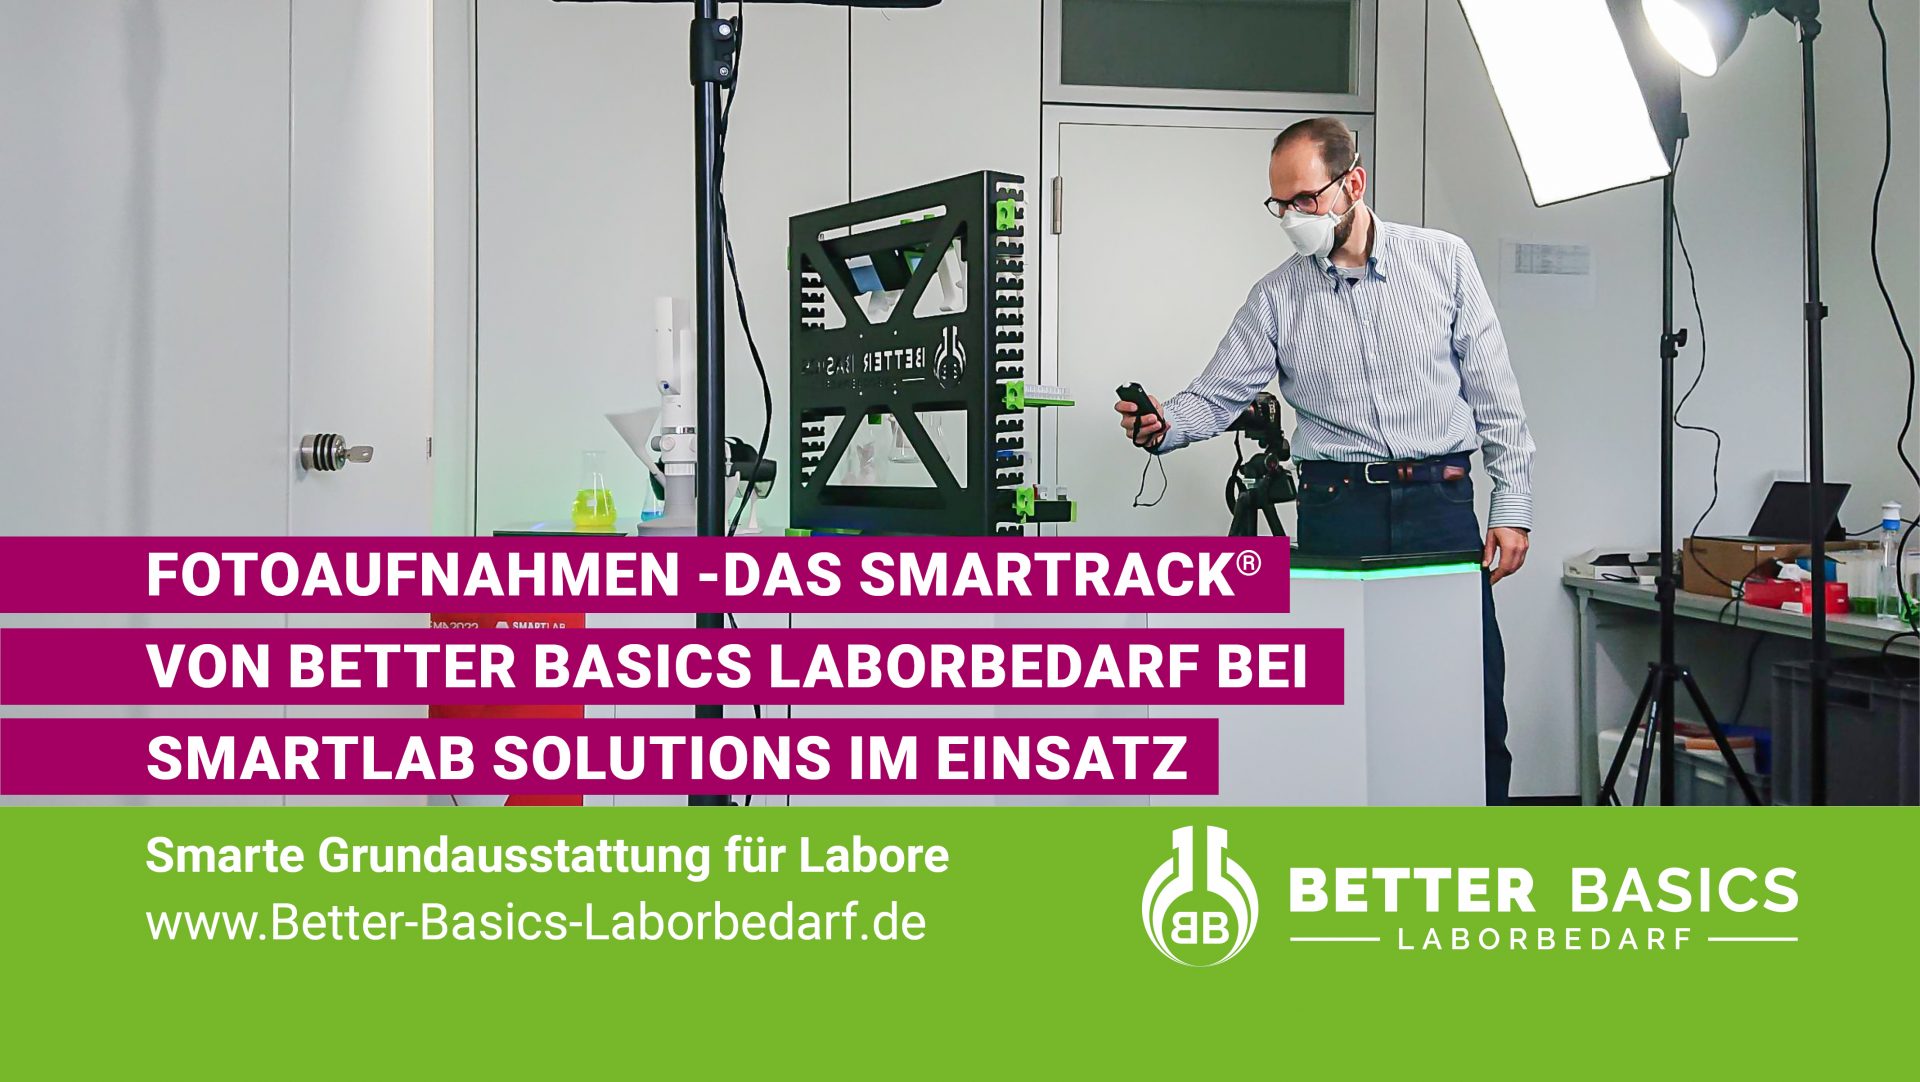 Am 27. September 2022 entstanden eine Reihe von Aufnahmen im Hause der SmartLab Solutions GmbH. Das SmartRack von Better Basics Laborbedarf GmbH ist auf den iHex-Waben im Einsatz.